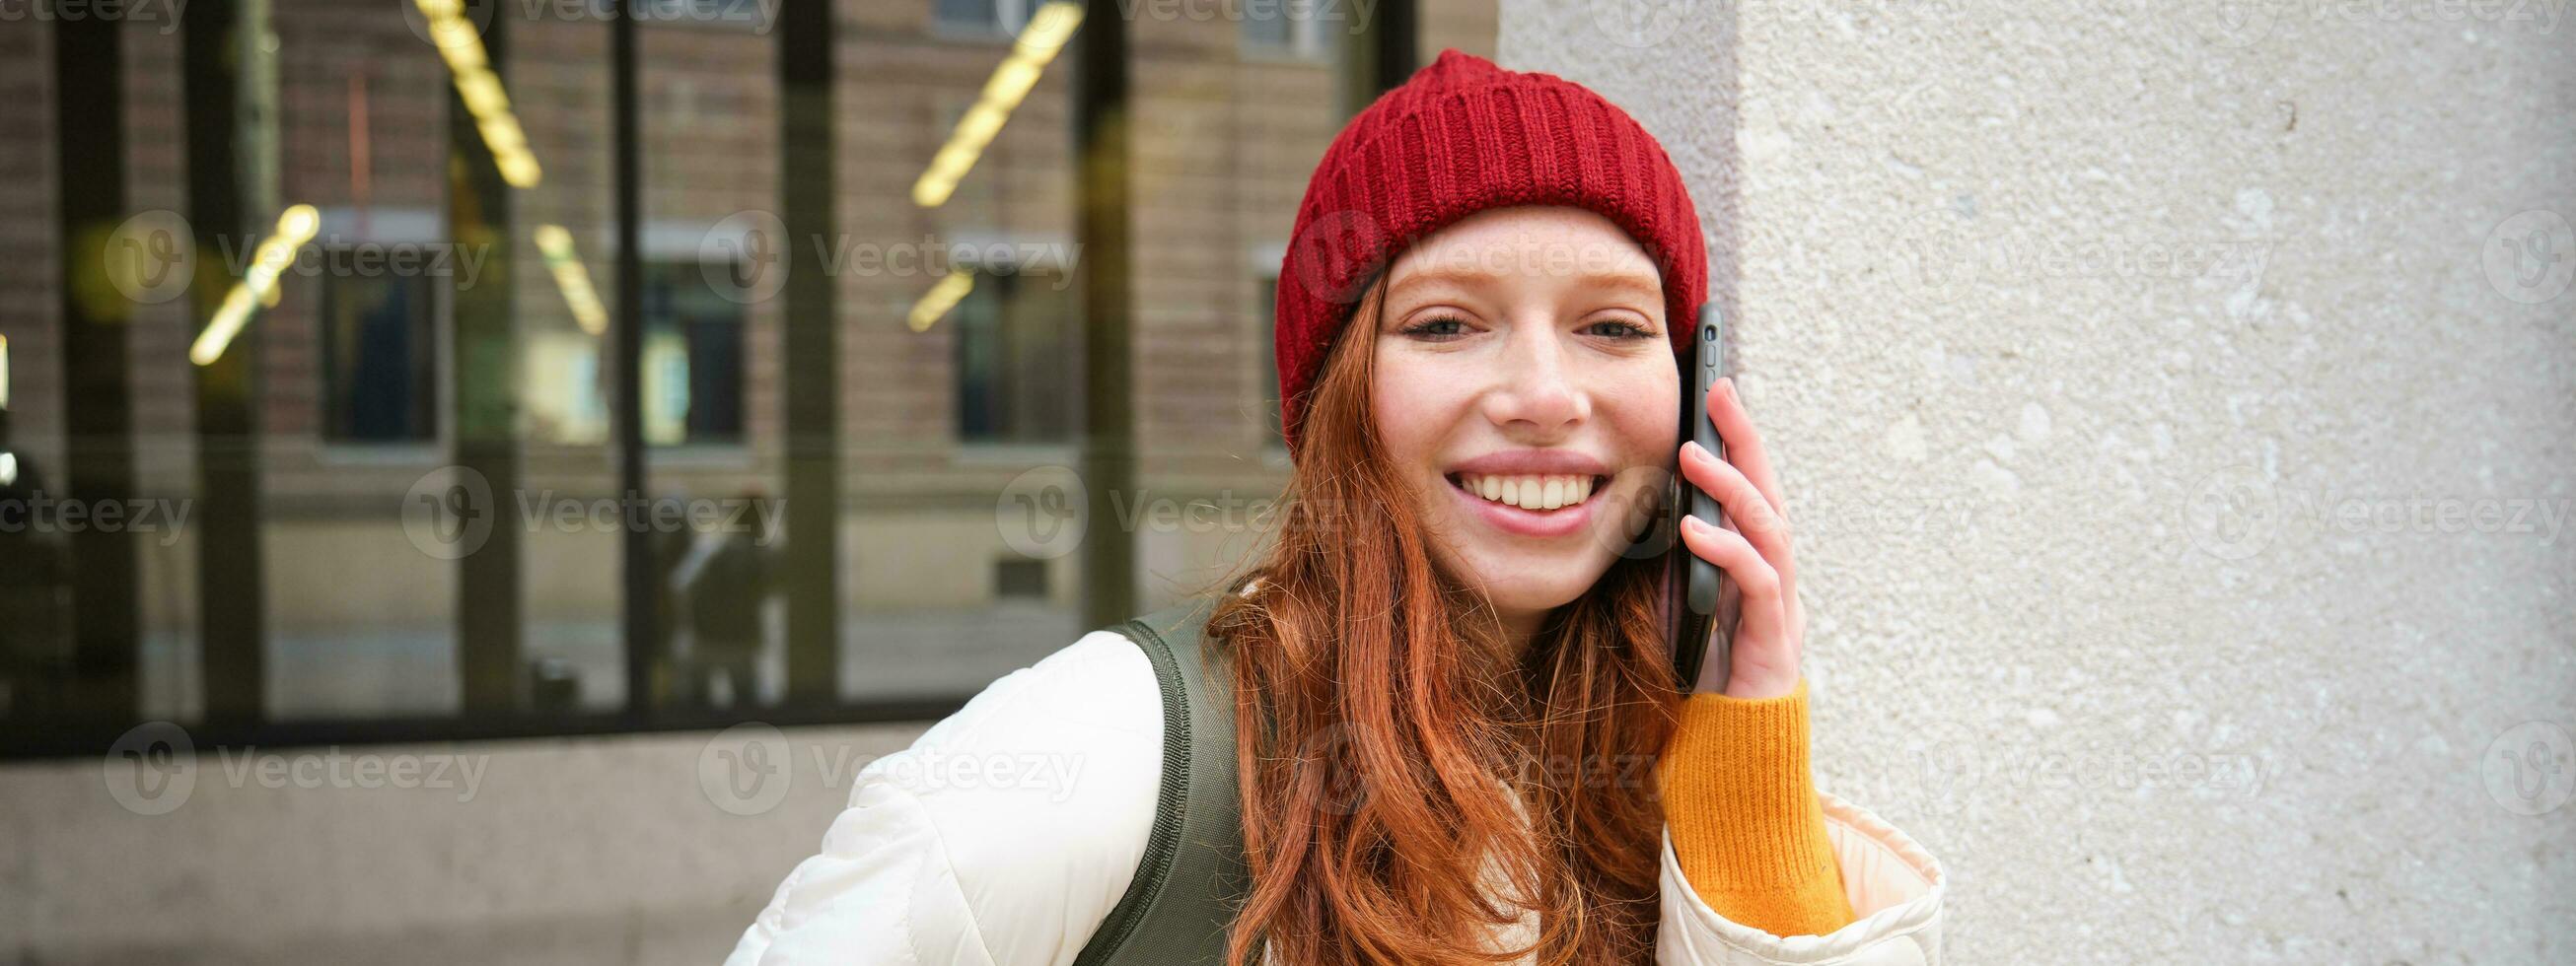 jong mensen en mobiel verbinding. gelukkig roodharige meisje praat Aan telefoon, maakt telefoon telefoongesprek, staat buitenshuis met rugzak en toepassingen smartphone app foto